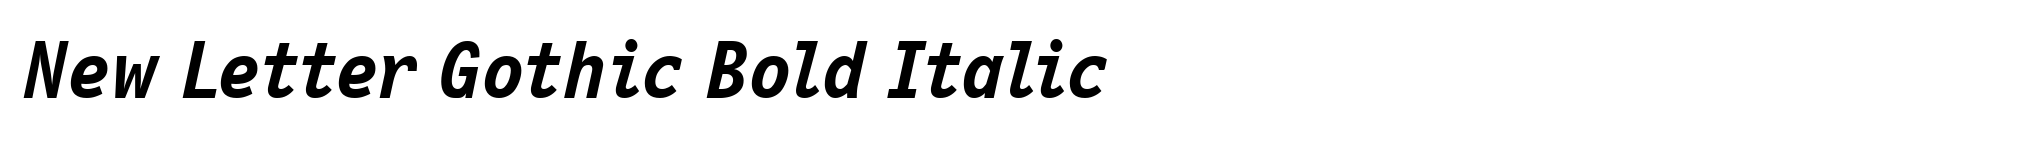 New Letter Gothic Bold Italic image